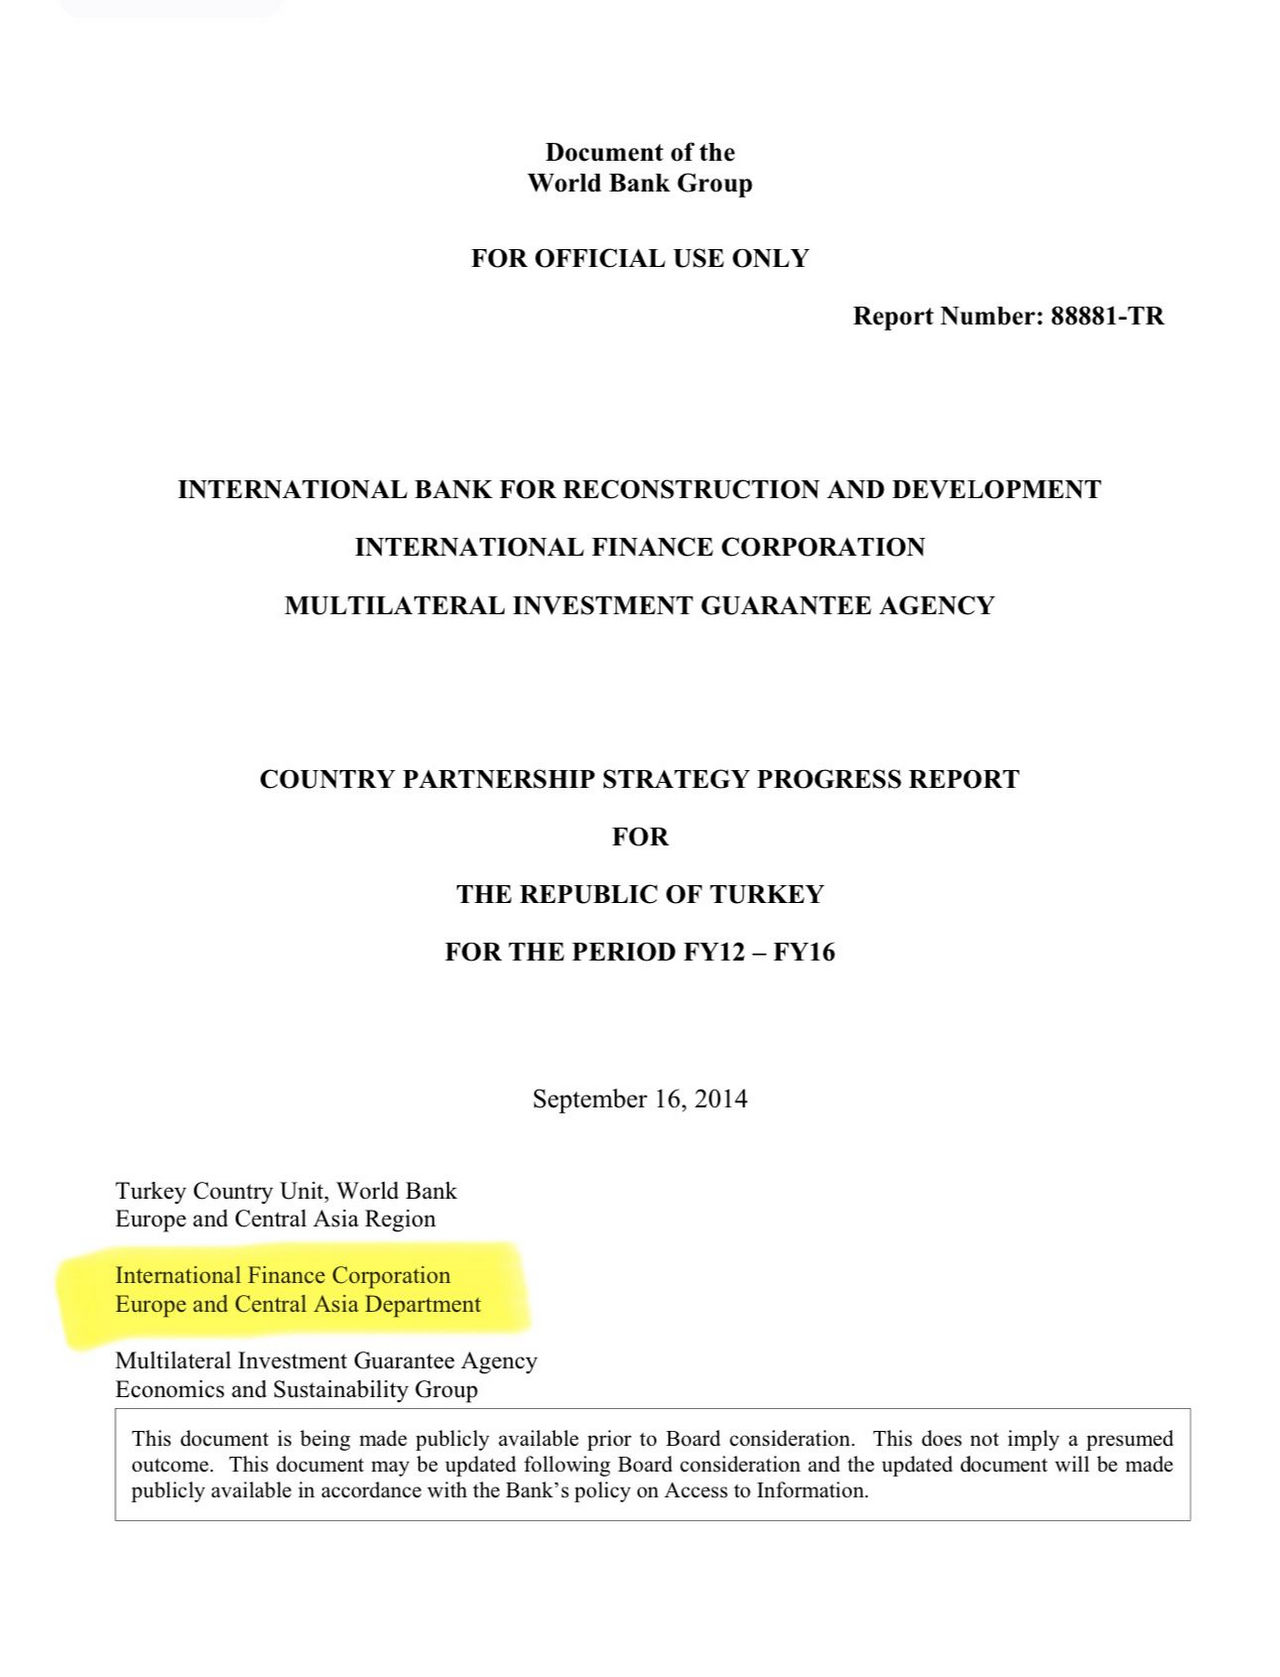 2012-16 dönemi İşbirliği Çerçeve Programı Sözleşmesinde Uluslararası Finans Kurumunun sözleşme tarafının "Avrupa ve Merkez Asya Departmanı"ydı. 